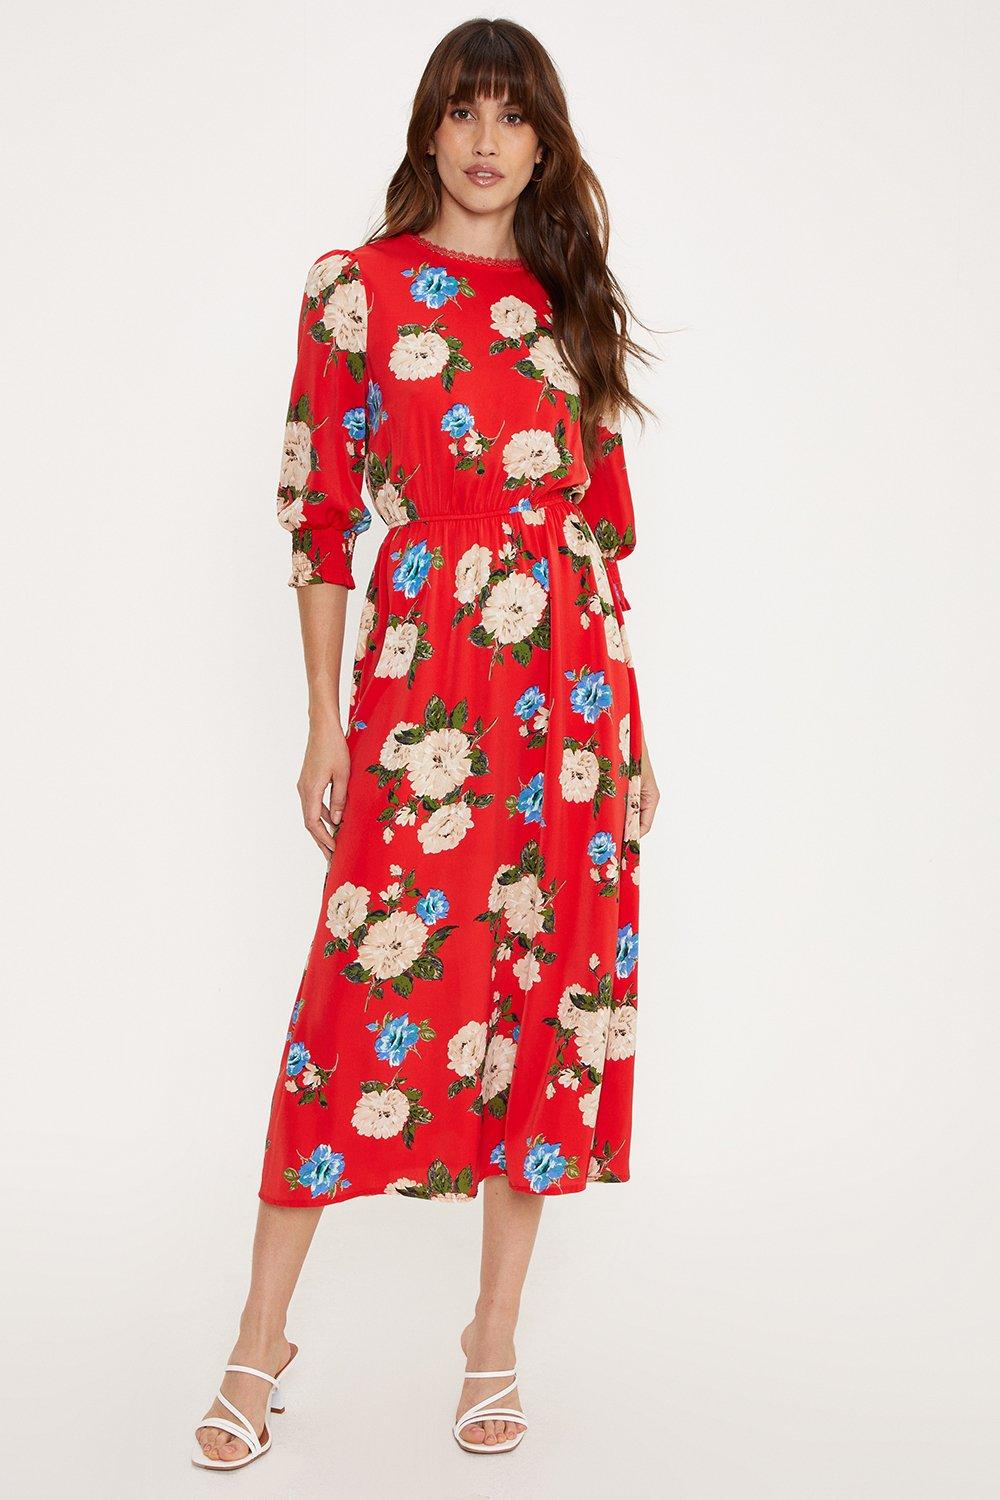 Dresses | Petite Red Floral Lace Trim Detail Midi Dress | Oasis